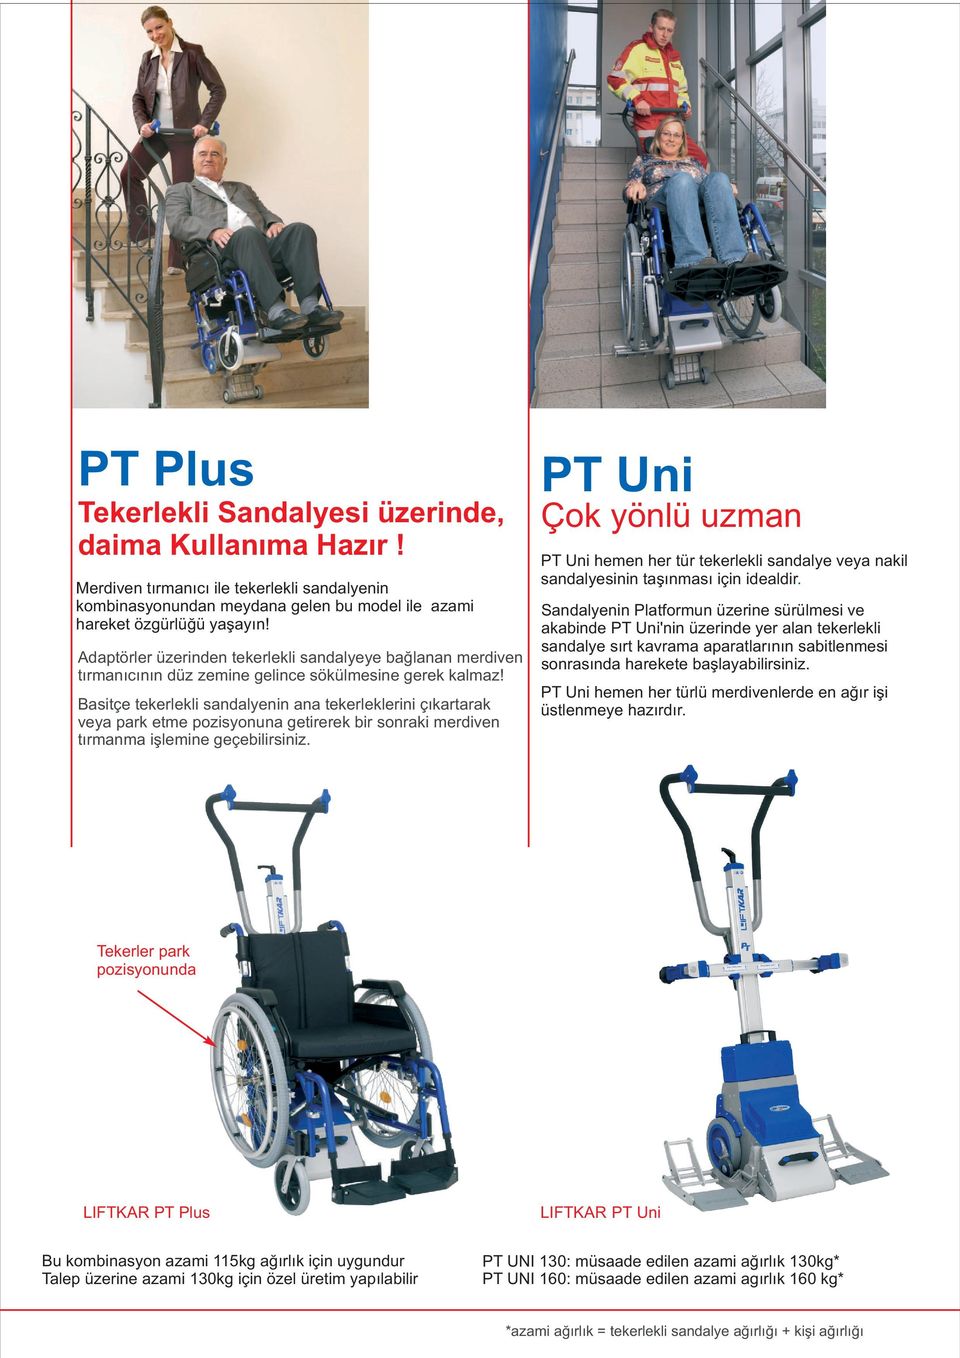 Basitçe tekerlekli sandalyenin ana tekerleklerini çýkartarak veya park etme pozisyonuna getirerek bir sonraki merdiven týrmanma iþlemine geçebilirsiniz.